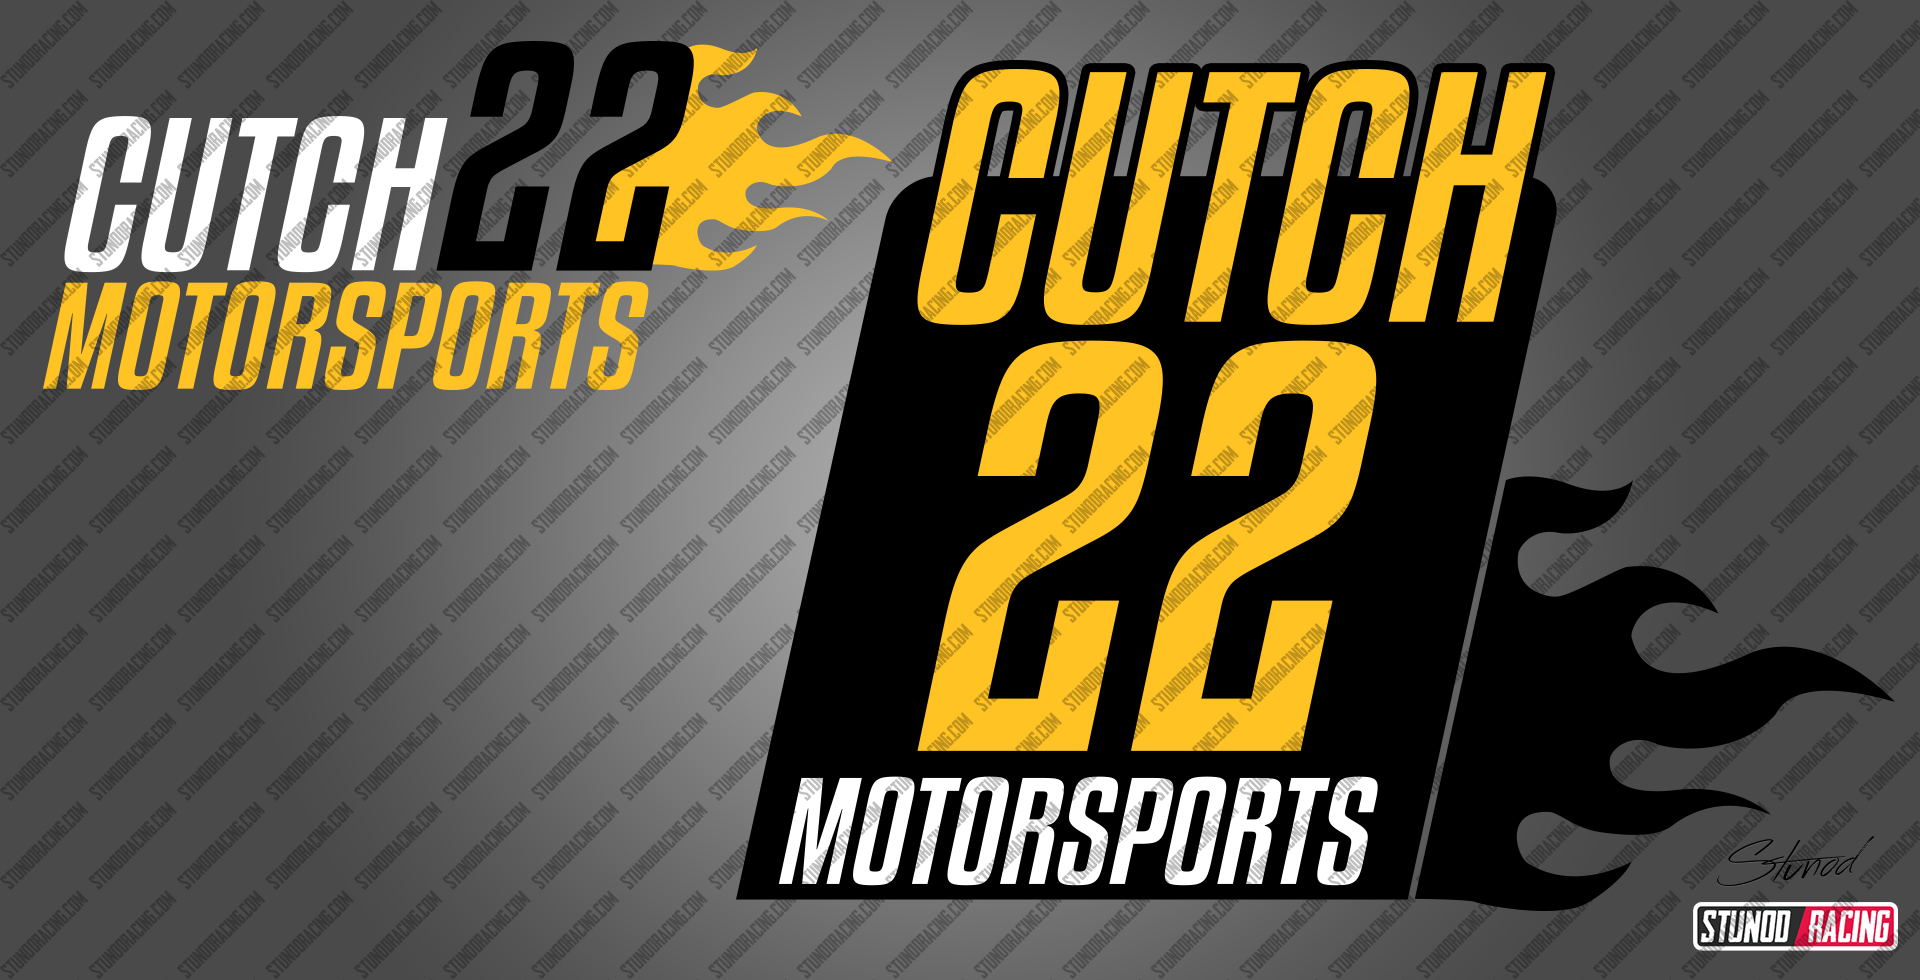 Cutch22Motorsports-Logo.jpg